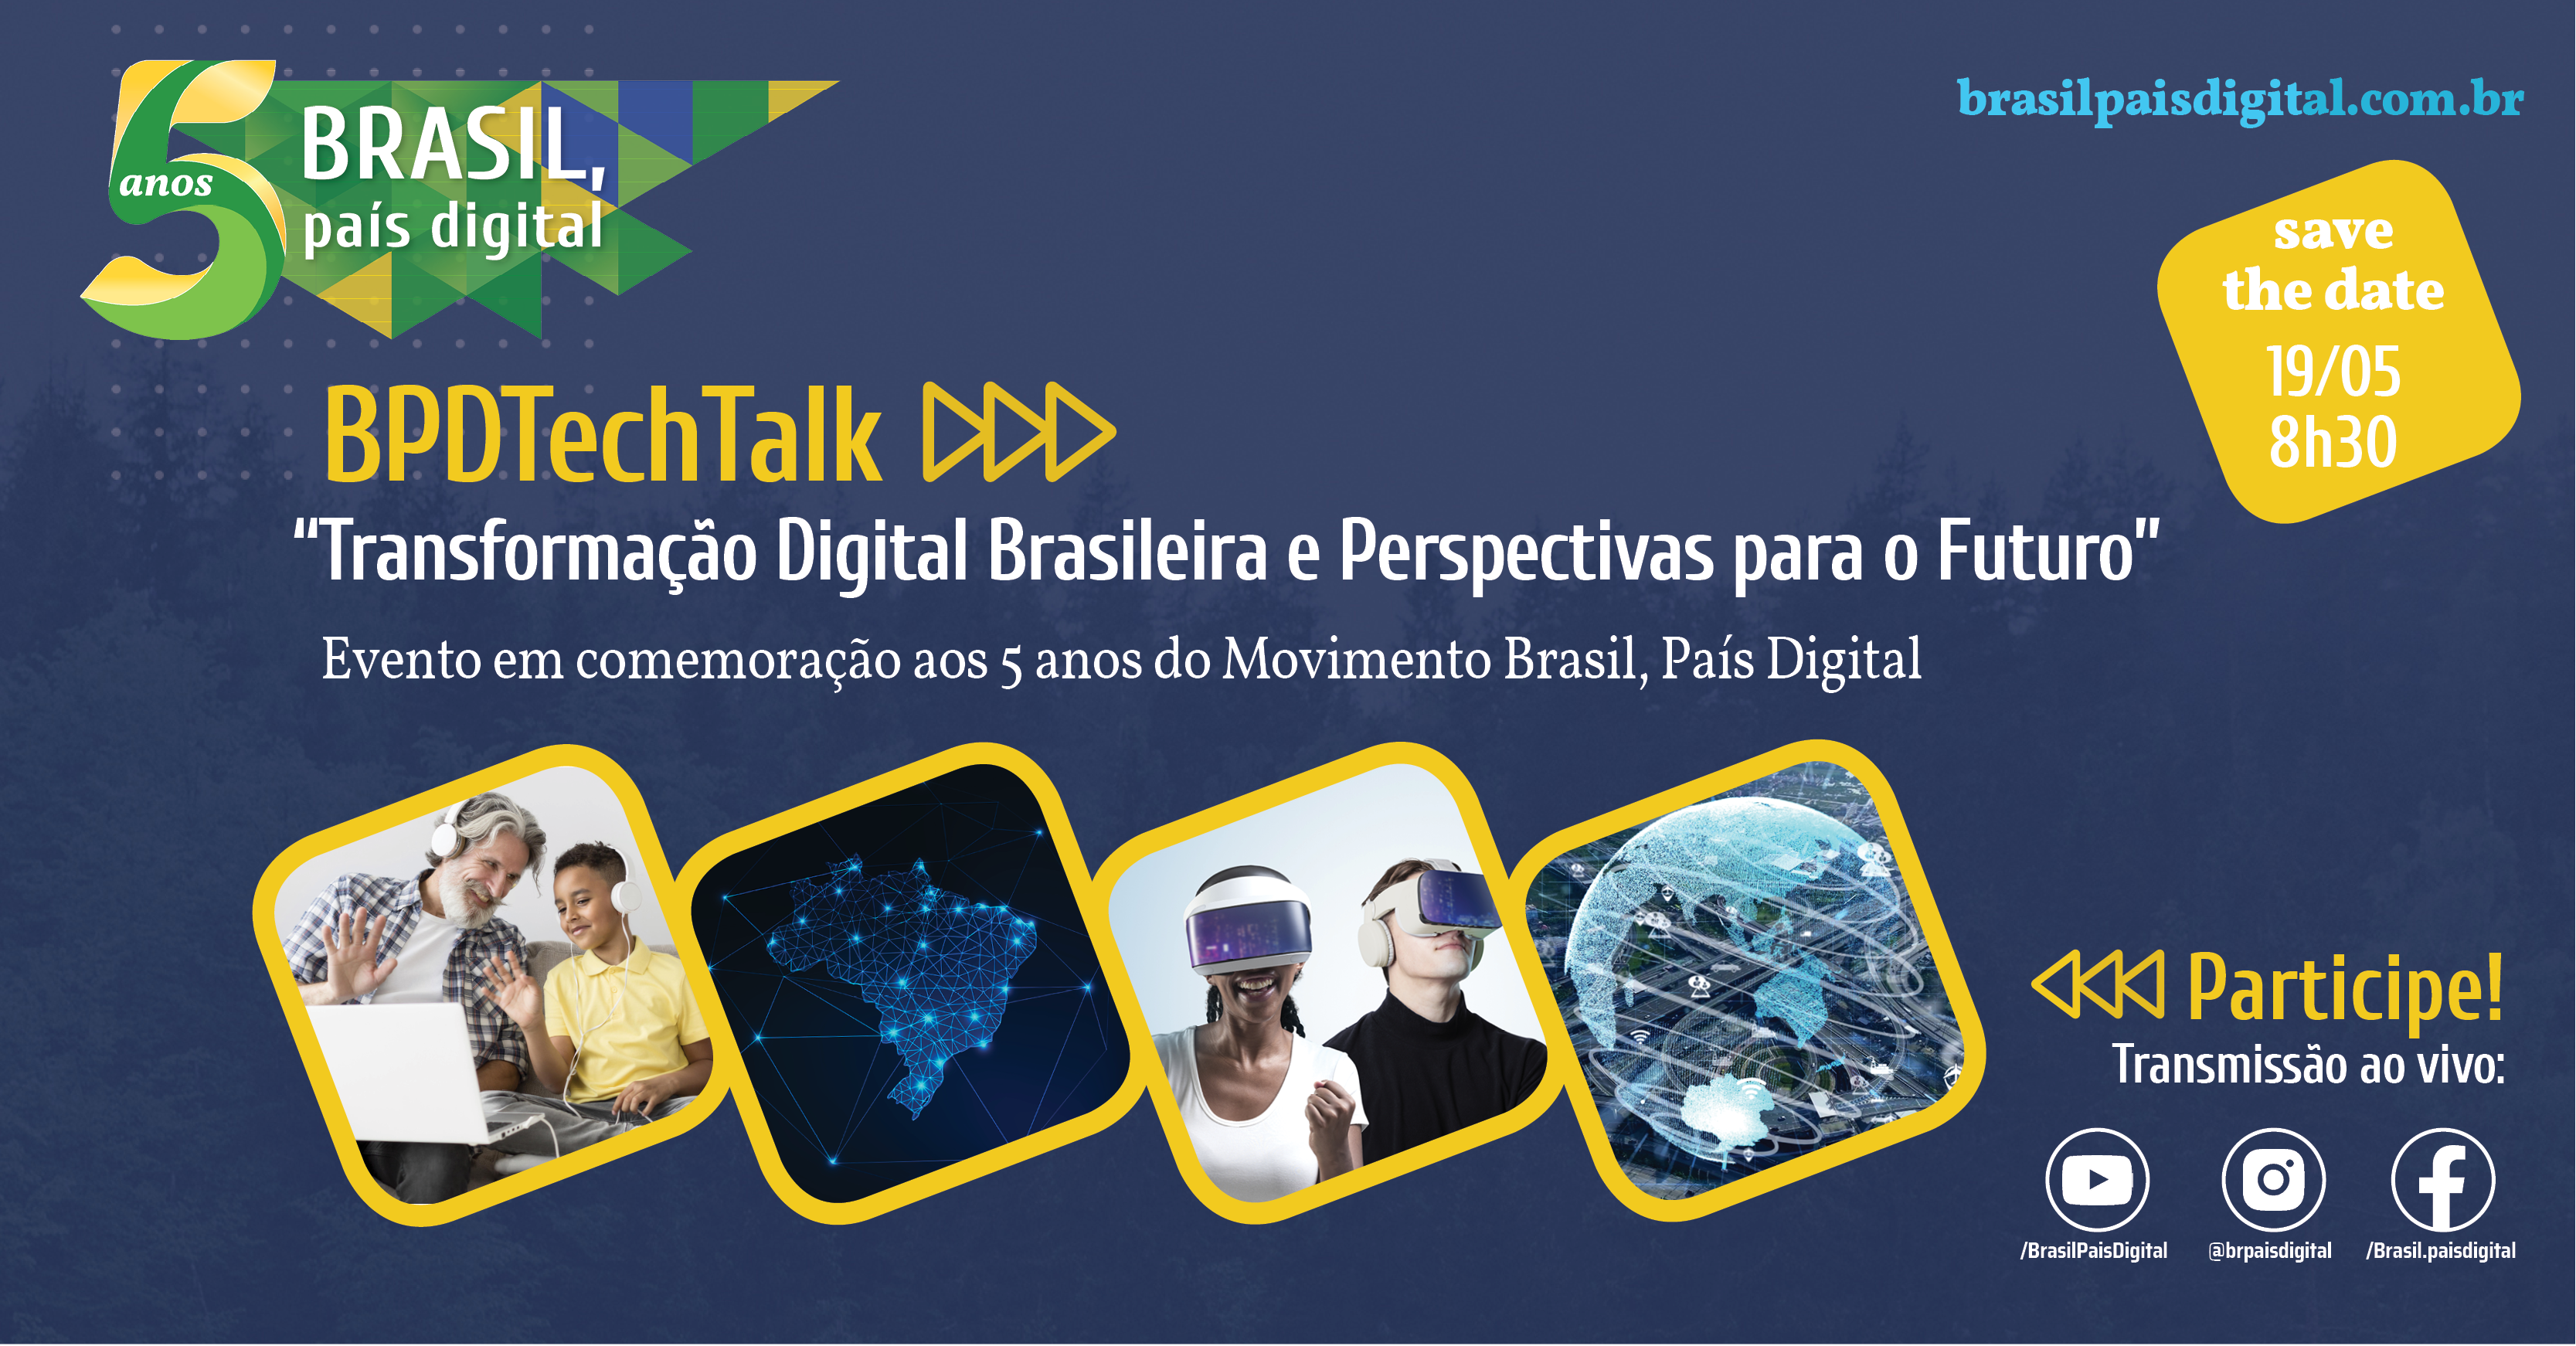 Save the date: Movimento Brasil, País Digital vai mostrar como impactou mais de 10 milhões de brasileiros em 5 anos de trajetória